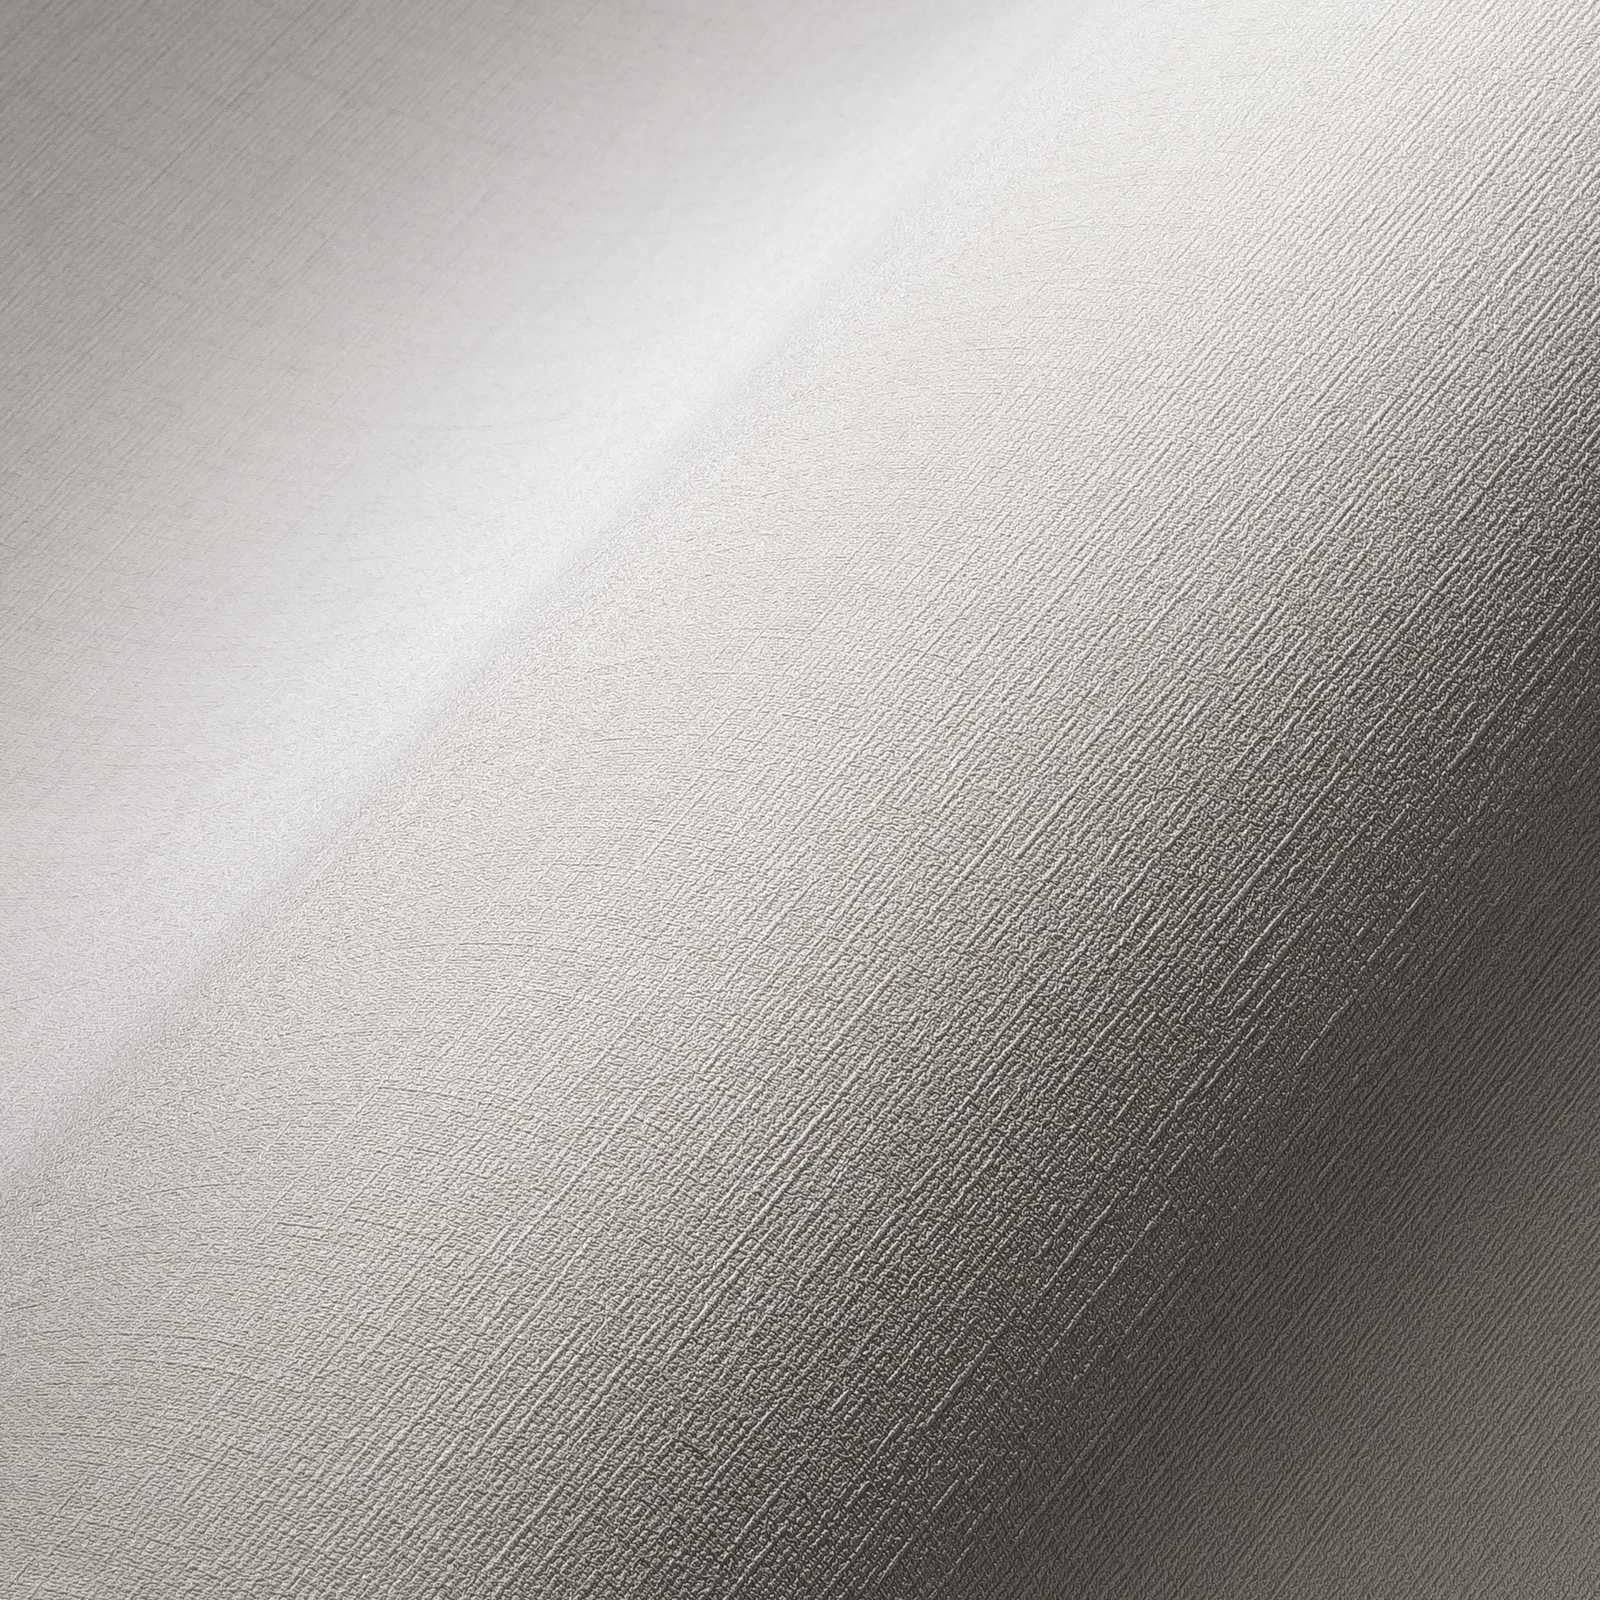             Papier peint uni gris clair avec structure en lin, chiné - gris
        